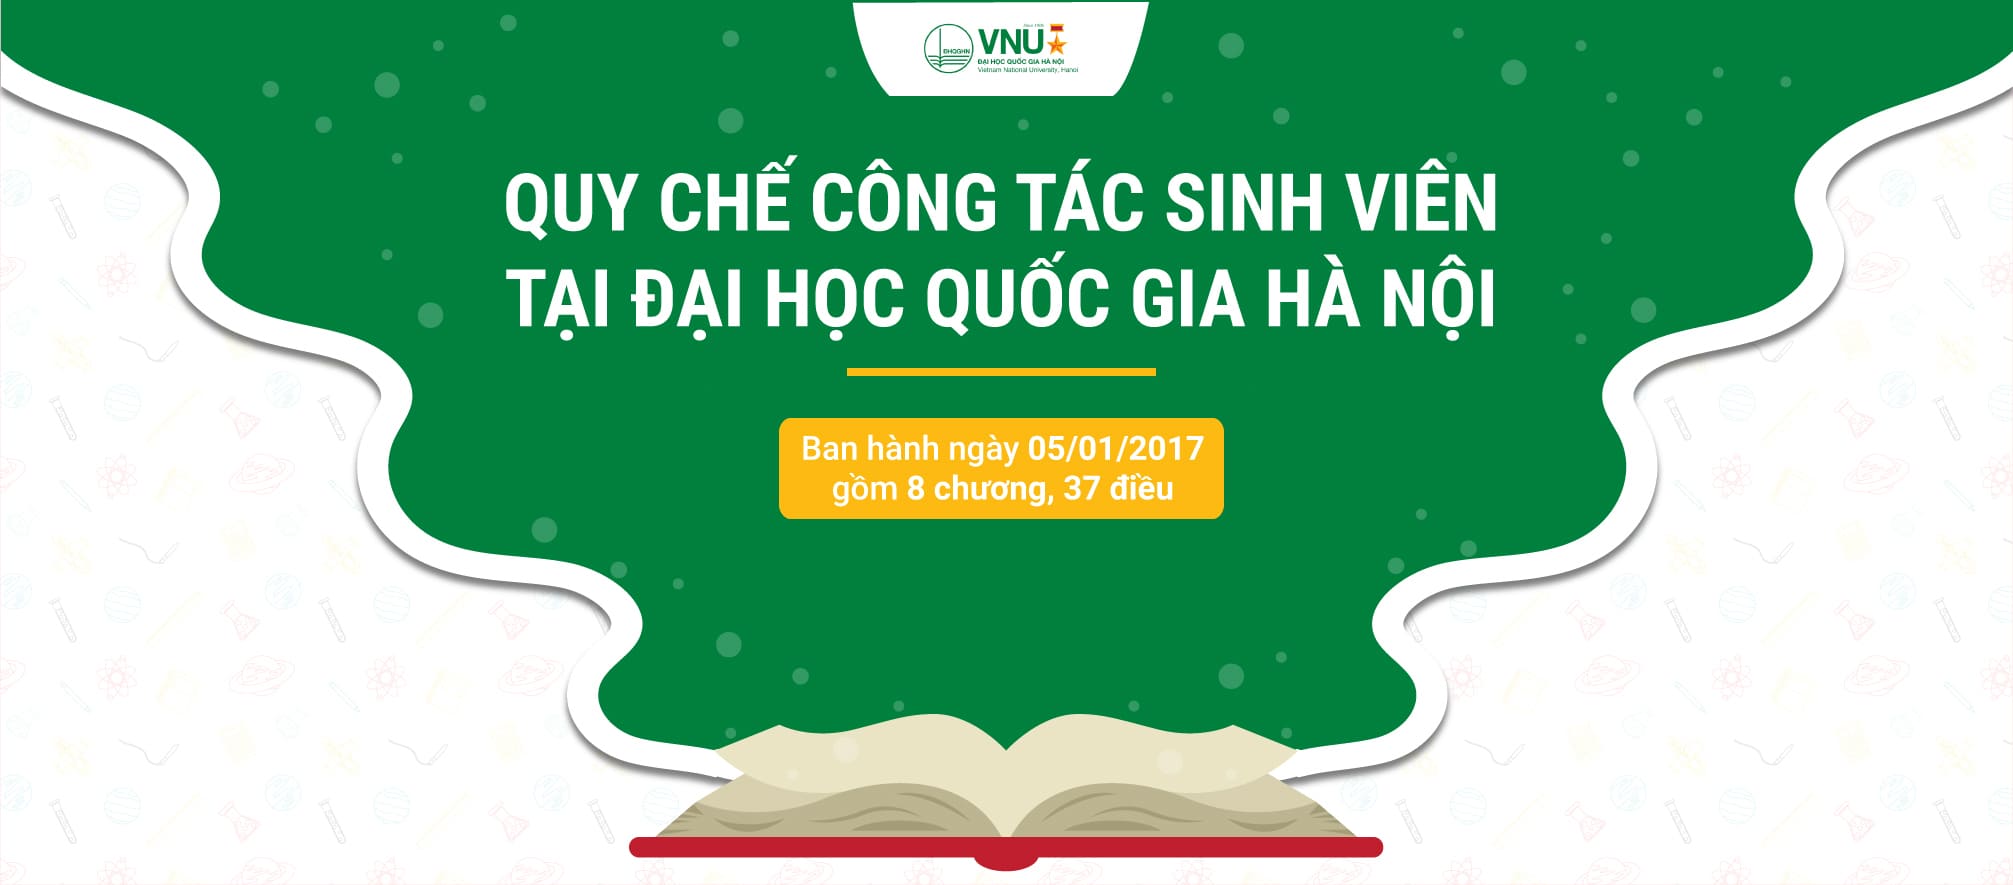 [Infographic] Quy chế công tác sinh viên tại Đại học Quốc gia Hà Nội